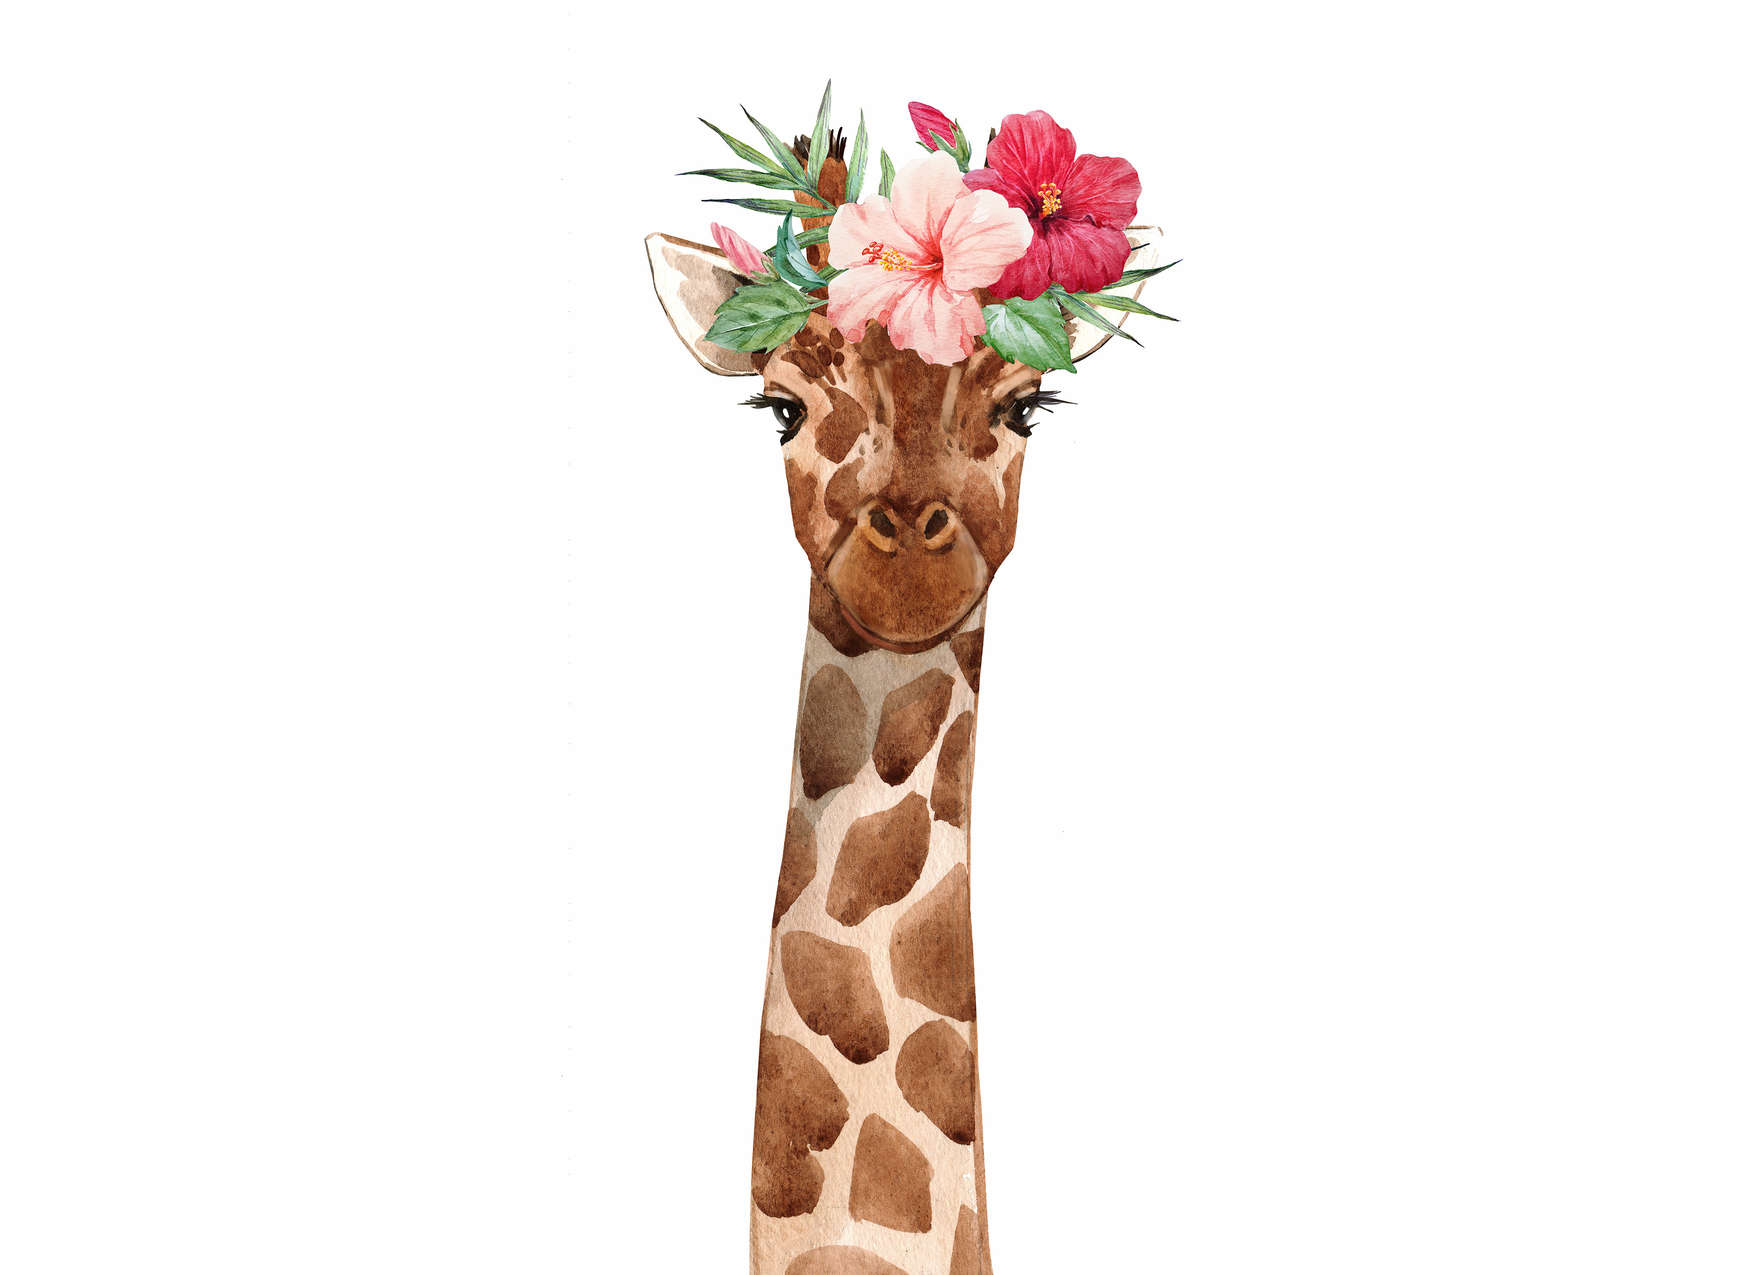             Fototapete Kinderzimmer mit Giraffe und floraler Kopfbedeckung – Weiß, Bunt
        